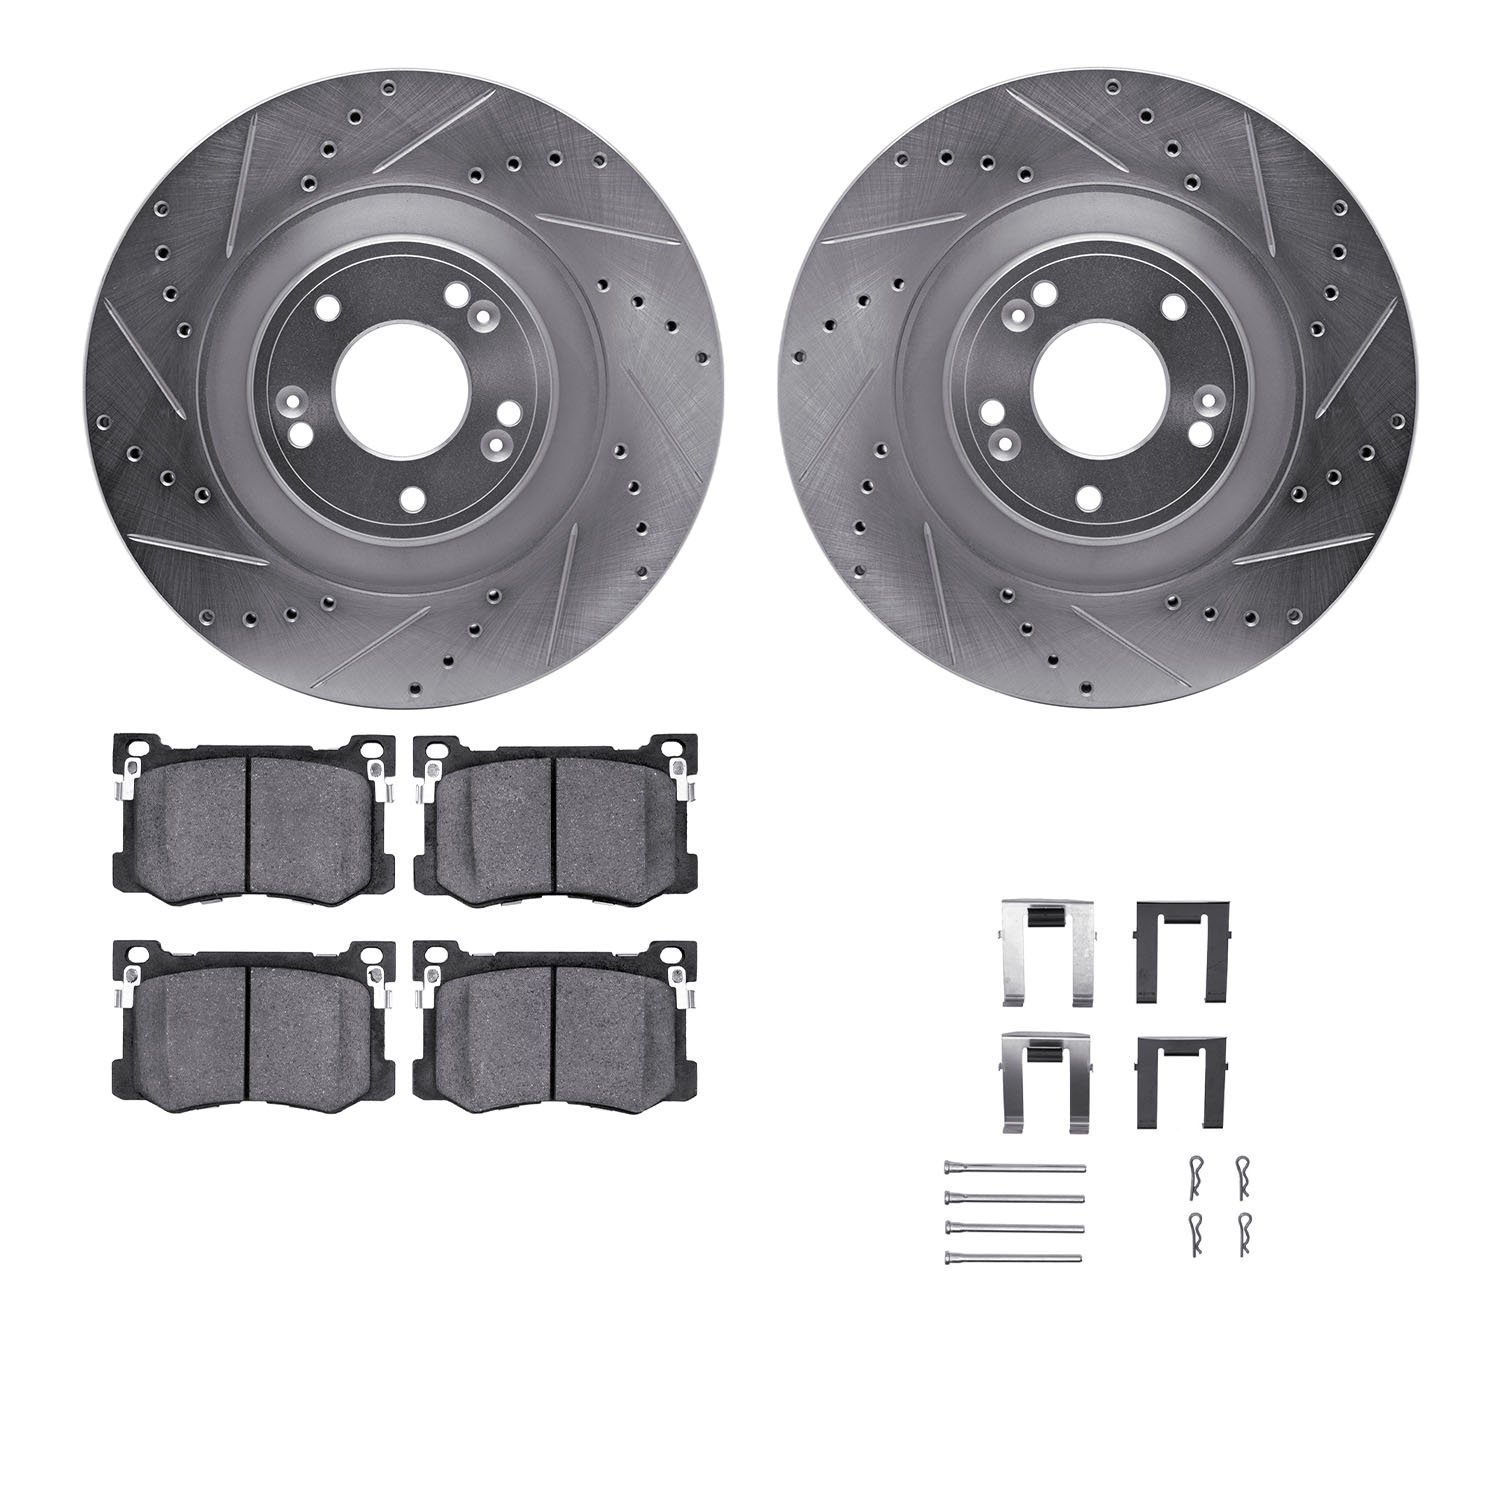 7312-03076 Drilled/Slotted Brake Rotor with 3000-Series Ceramic Brake Pads Kit & Hardware [Silver], 2015-2017 Kia/Hyundai/Genesi